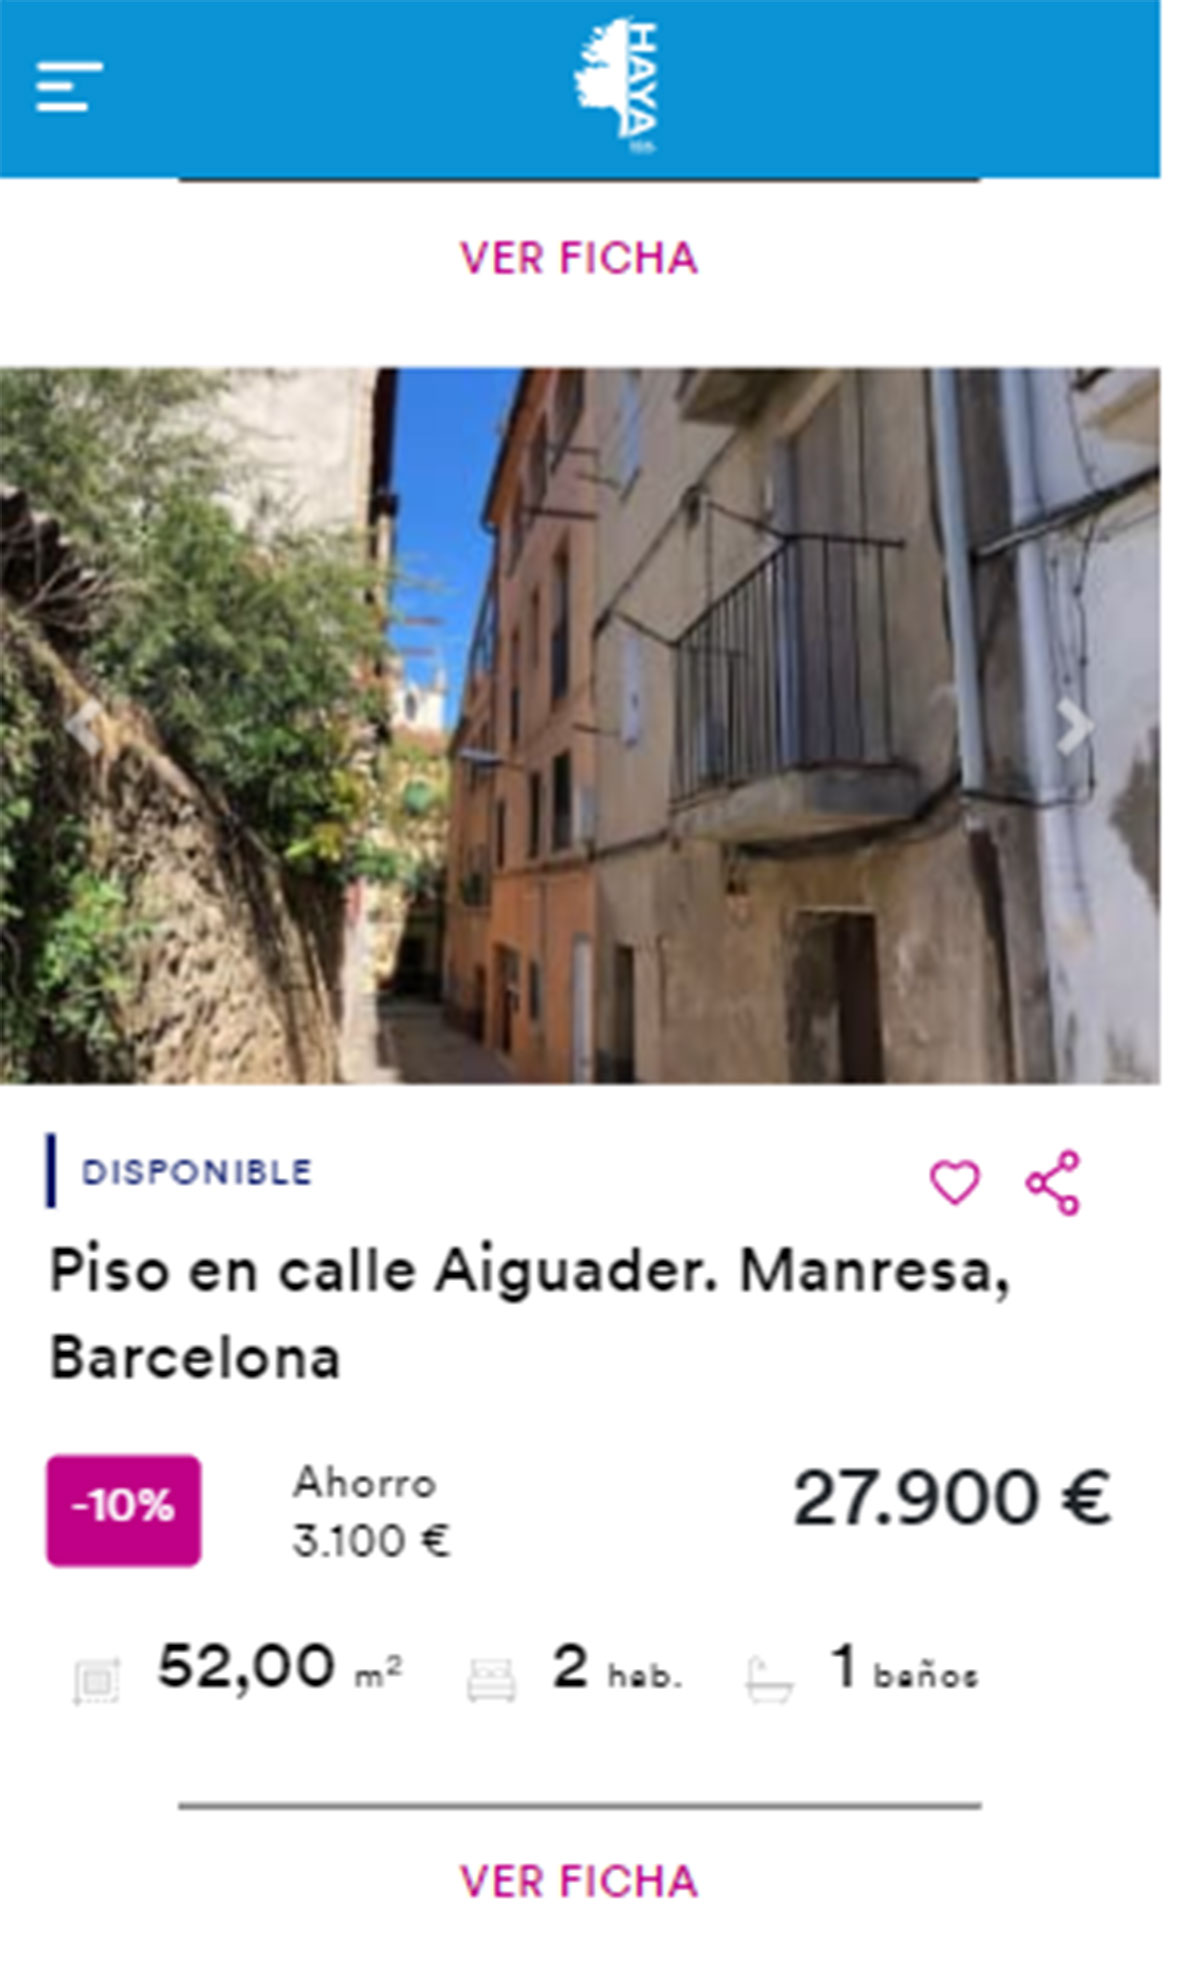 Piso en Barcelona por 27.900 euros